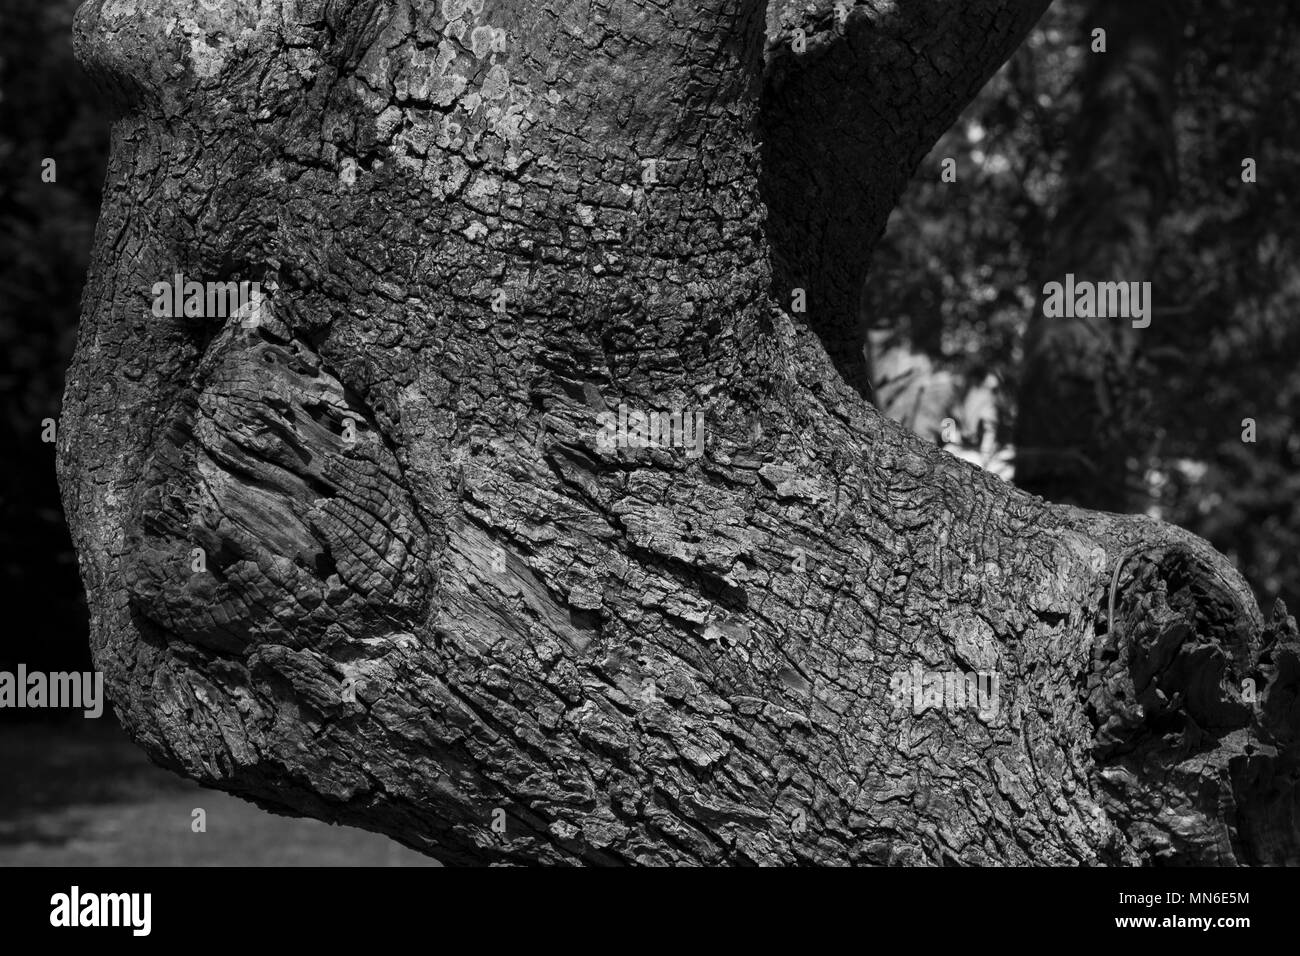 Dettaglio macro di corteccia di albero e rami intrecciati Foto Stock